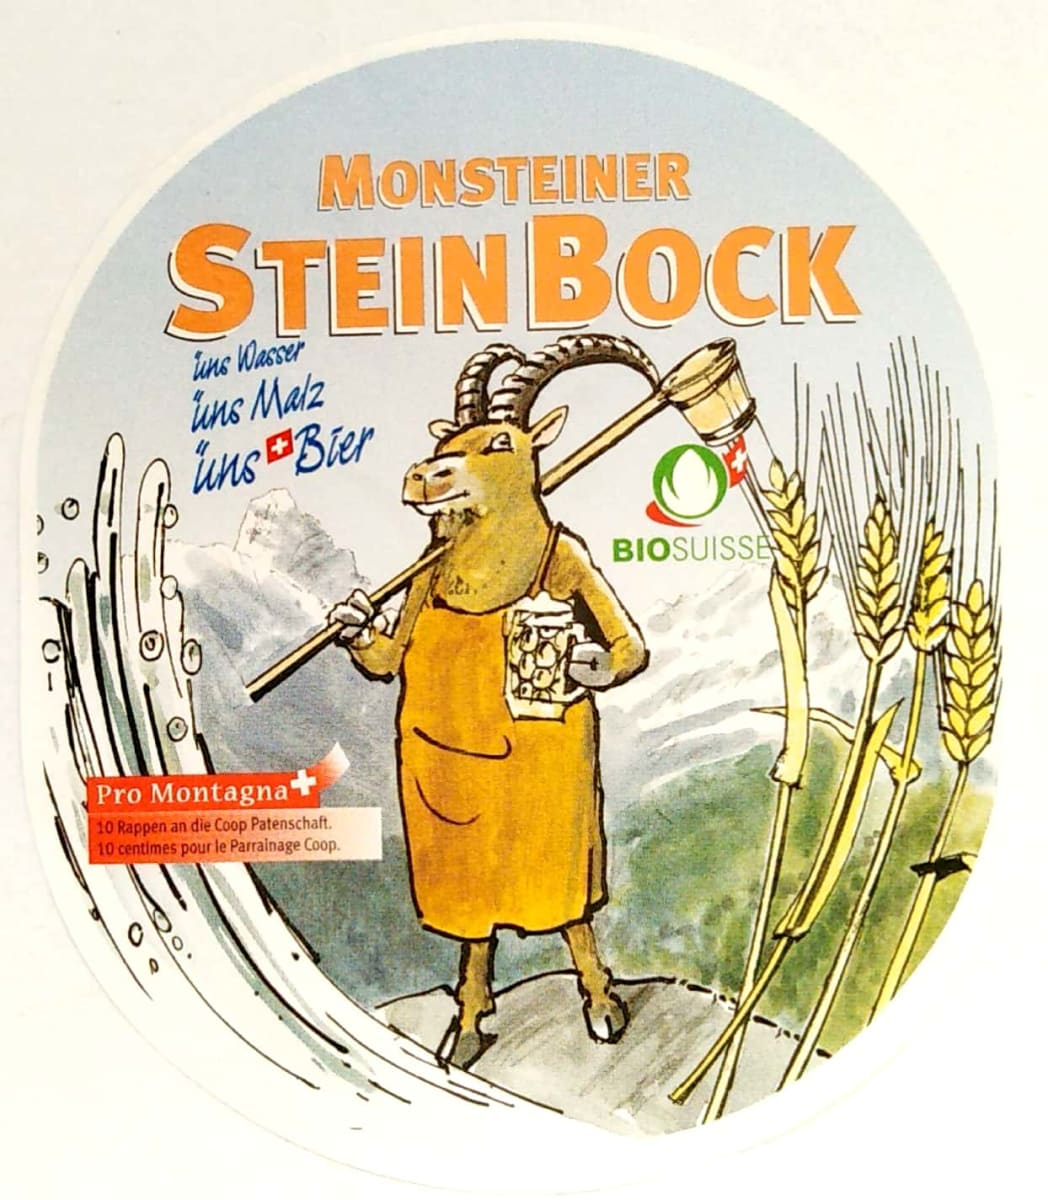 Monsteiner Stein Bock